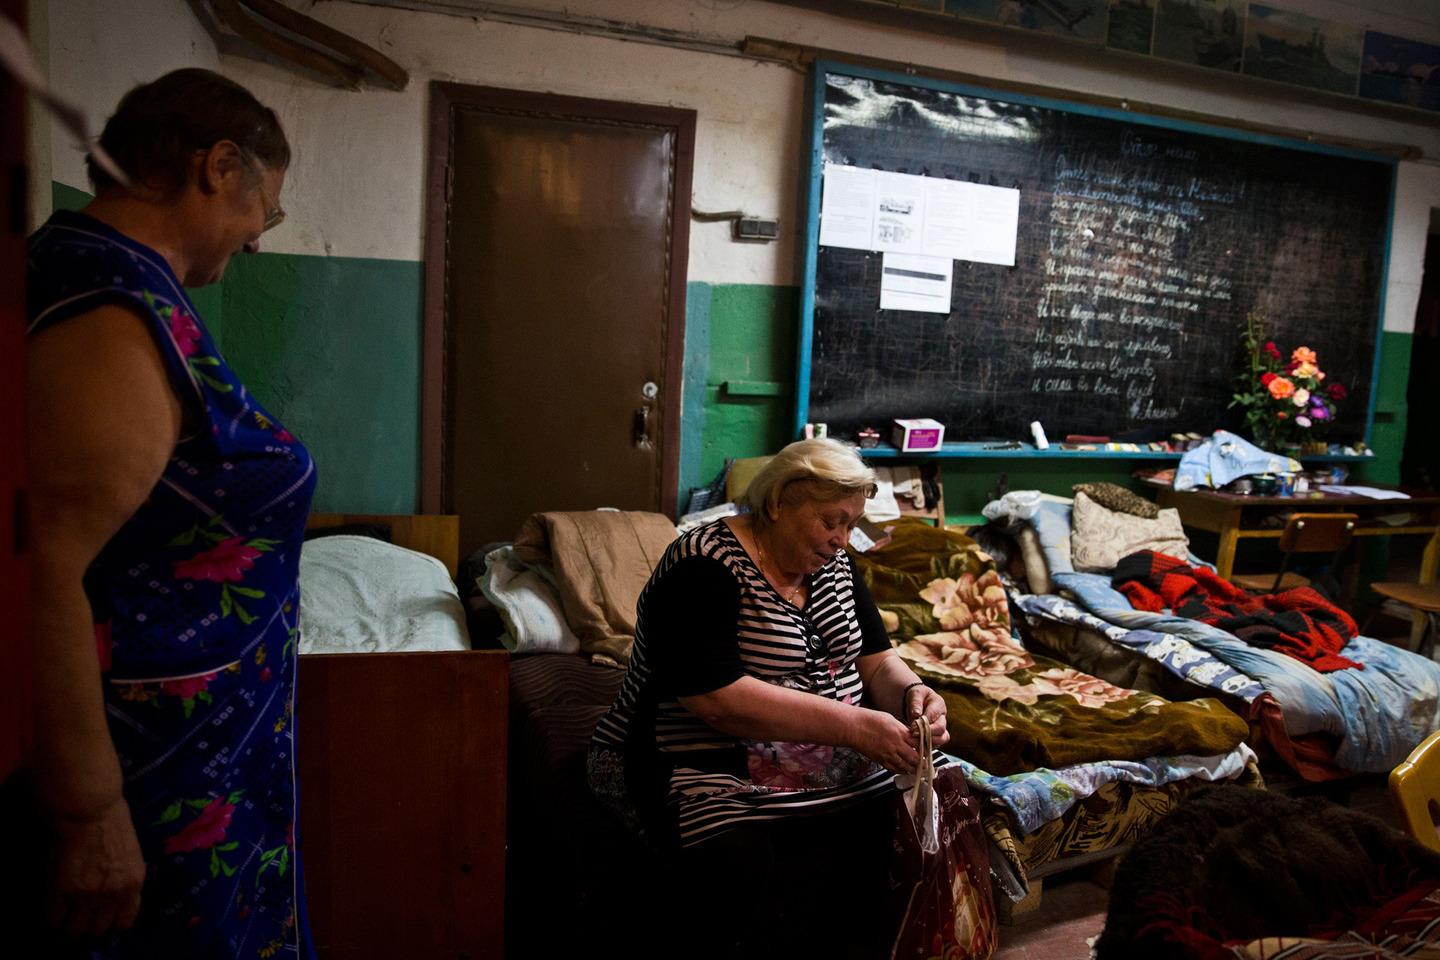 Nhiều người dân Donetsk (bao gồm cả phụ nữ và trẻ em) phải ở trong hầm trú ẩn cả ngày lẫn đêm để bảo đảm an toàn